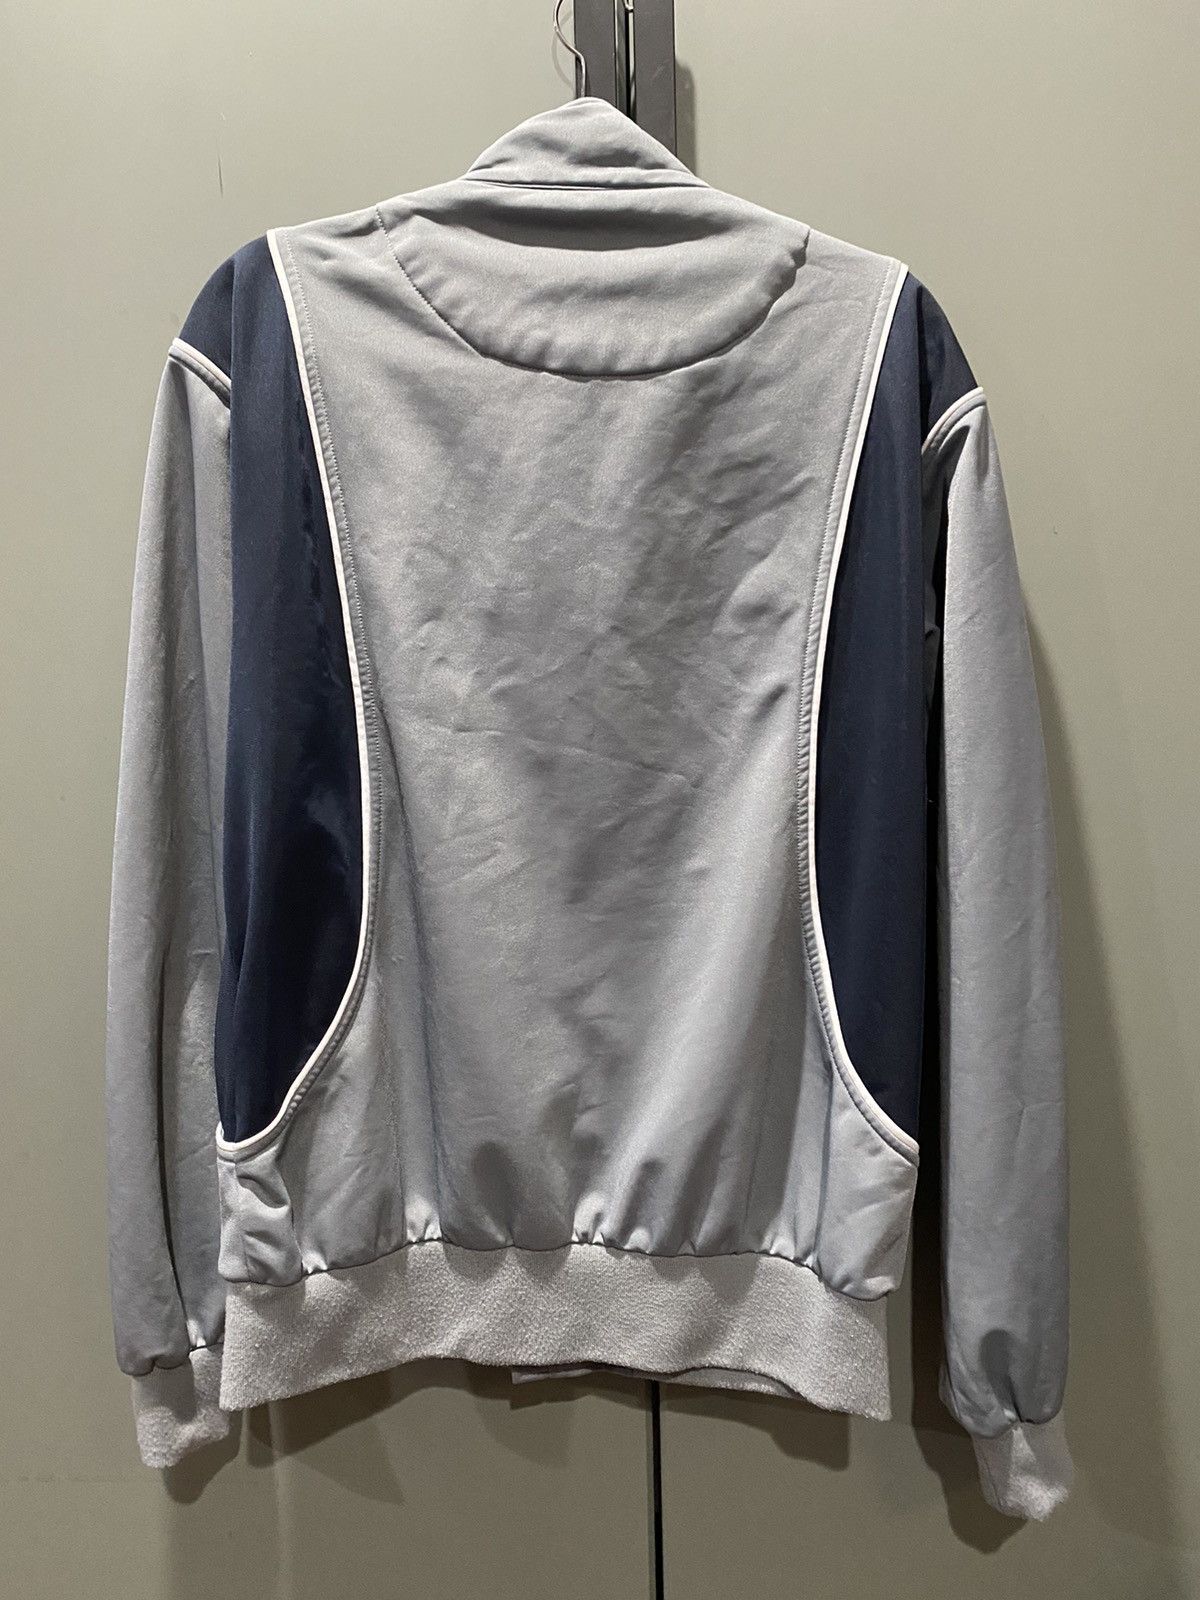 Palace Grey Palace Sweater Size US M / EU 48-50 / 2 - 3 Thumbnail